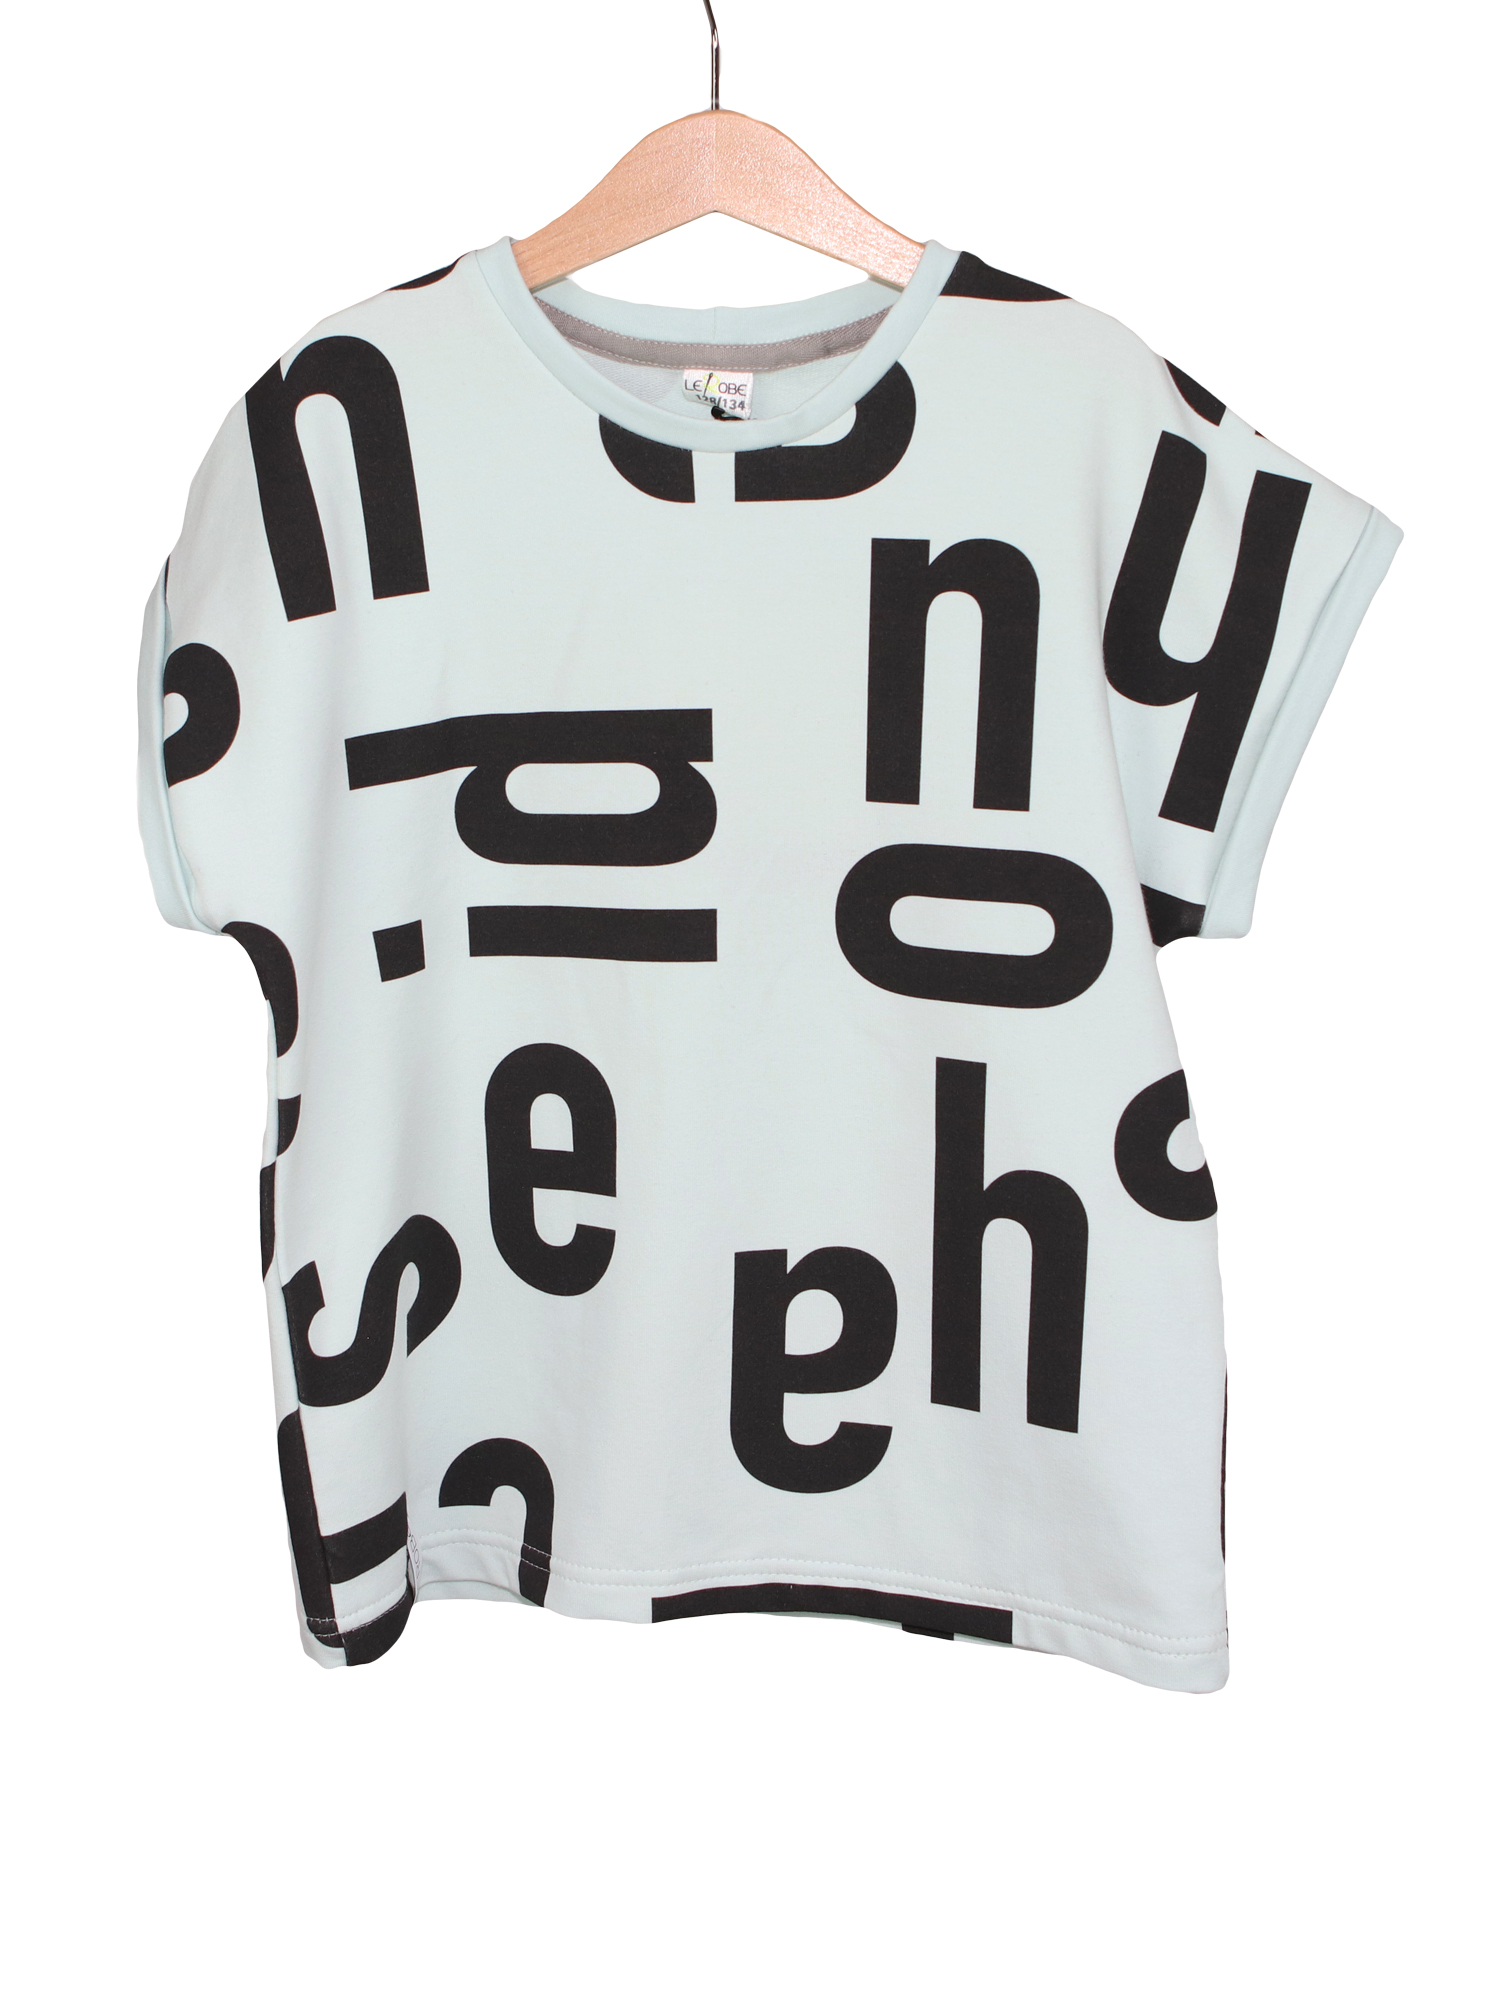 Oversize Shirt für Kinder in mint mit großen Buchstaben